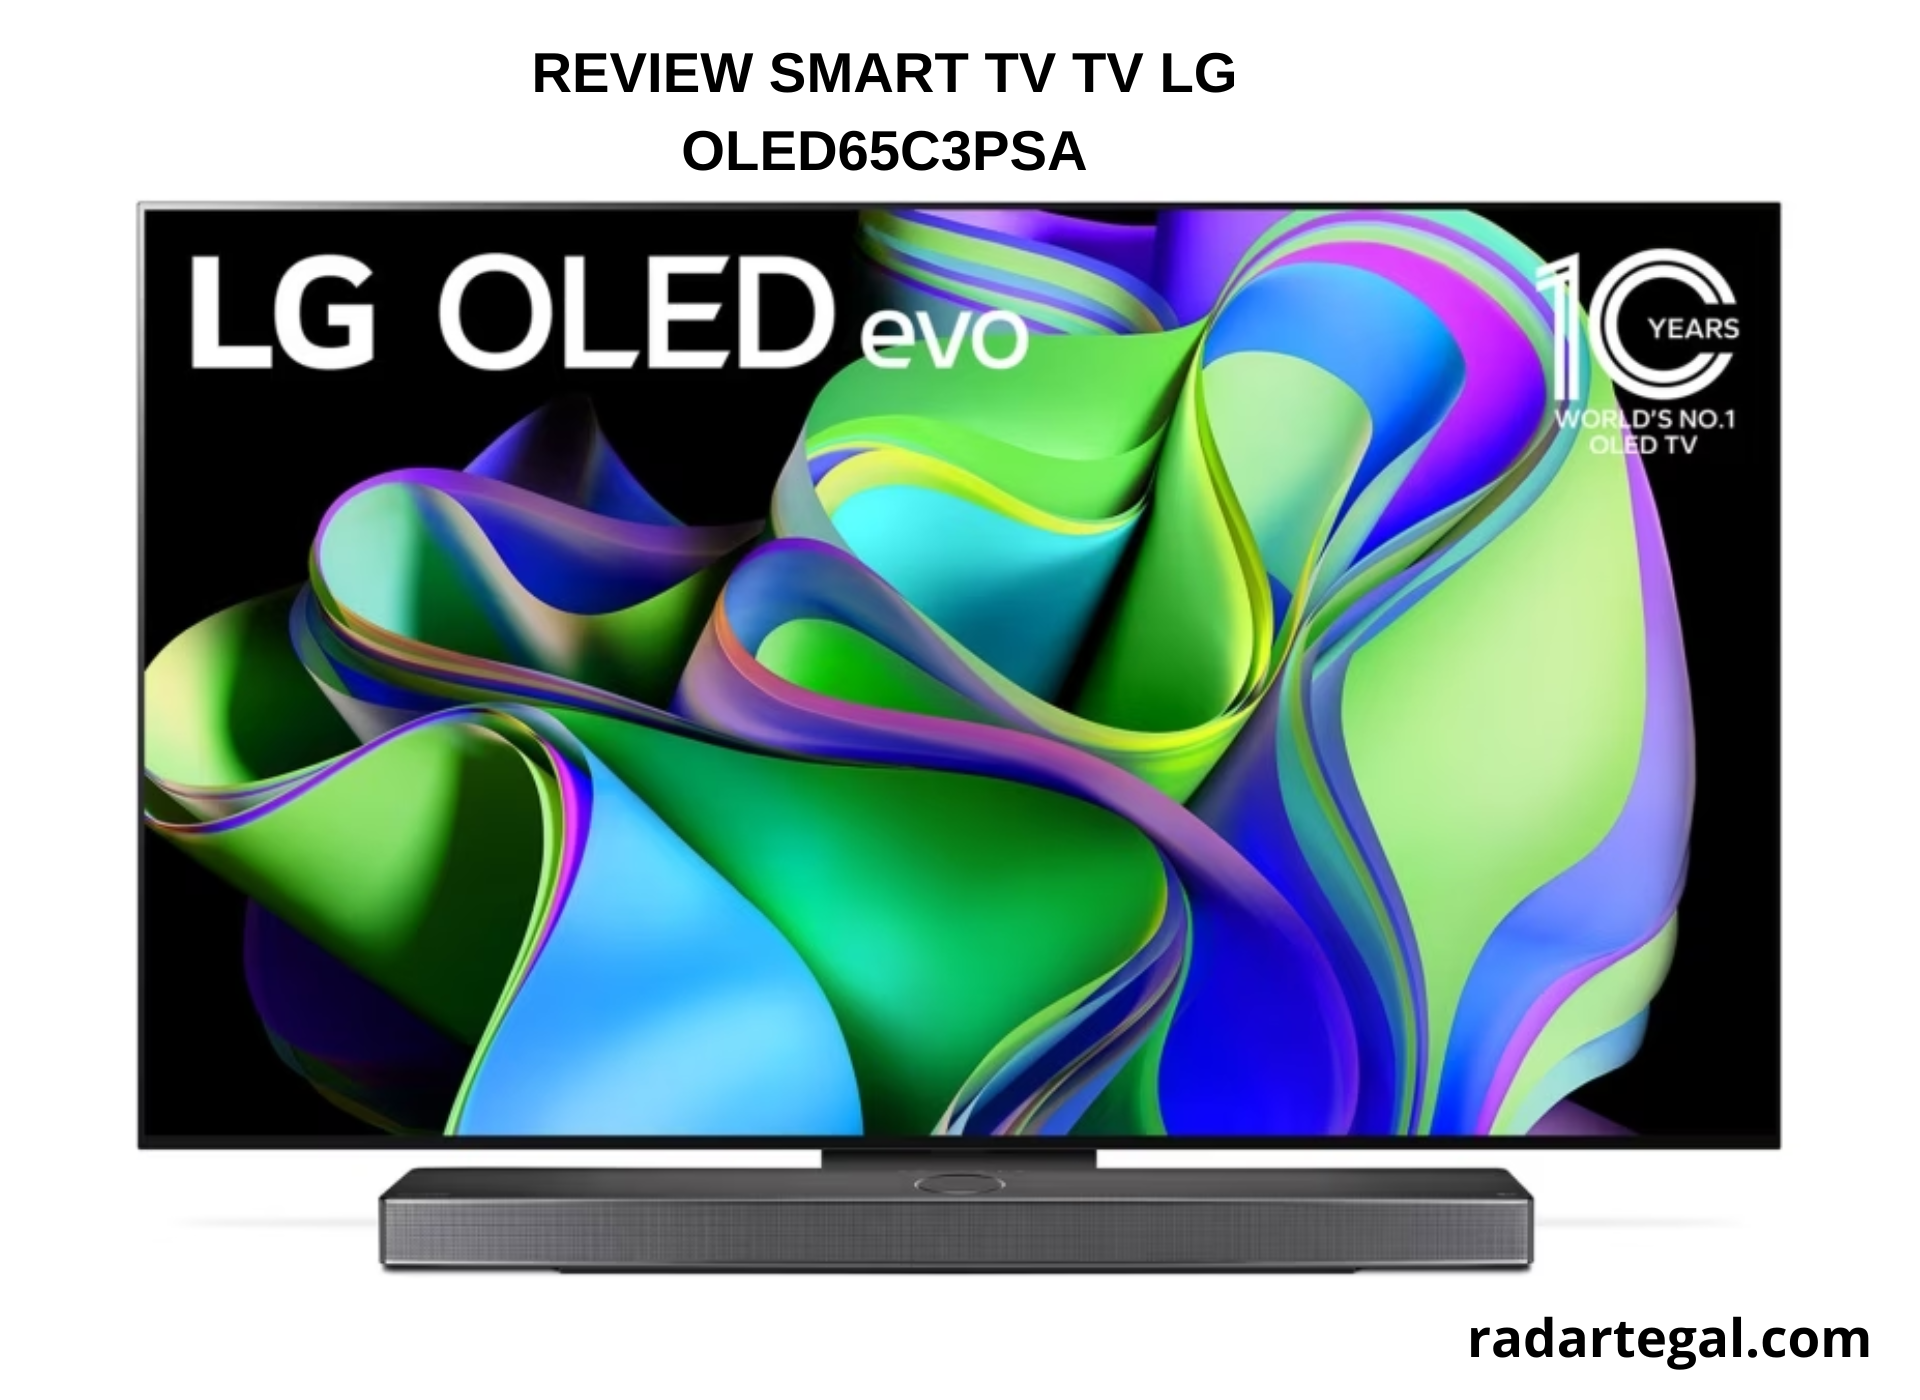 Spesifikasi Smart TV TV LG OLED65C3PSA Kualitasnya Kaya Bioskop, Bisa Nonton Film Secara Maraton